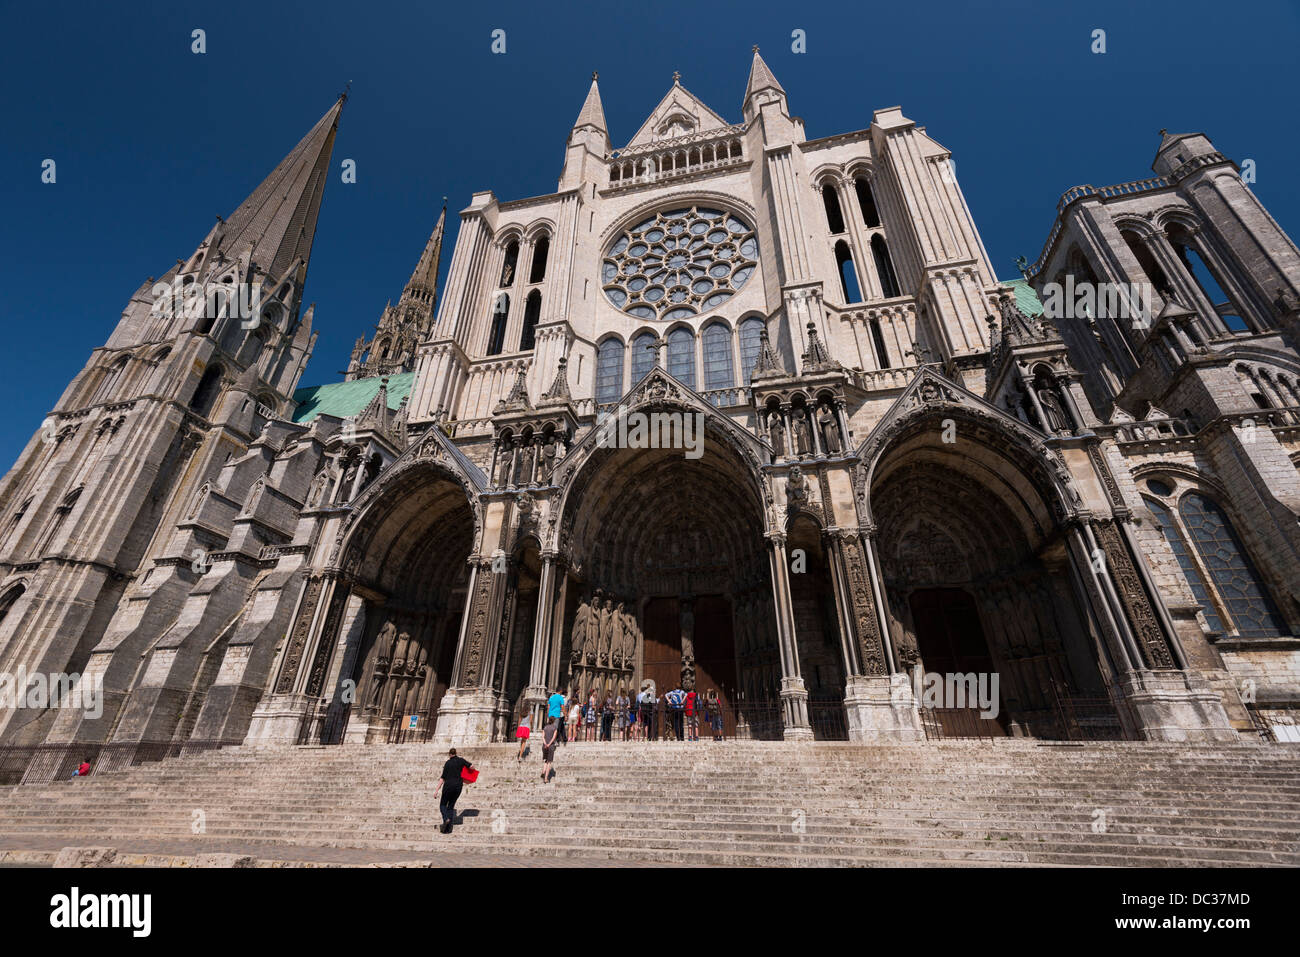 La cathédrale gothique de Chartres, France Banque D'Images